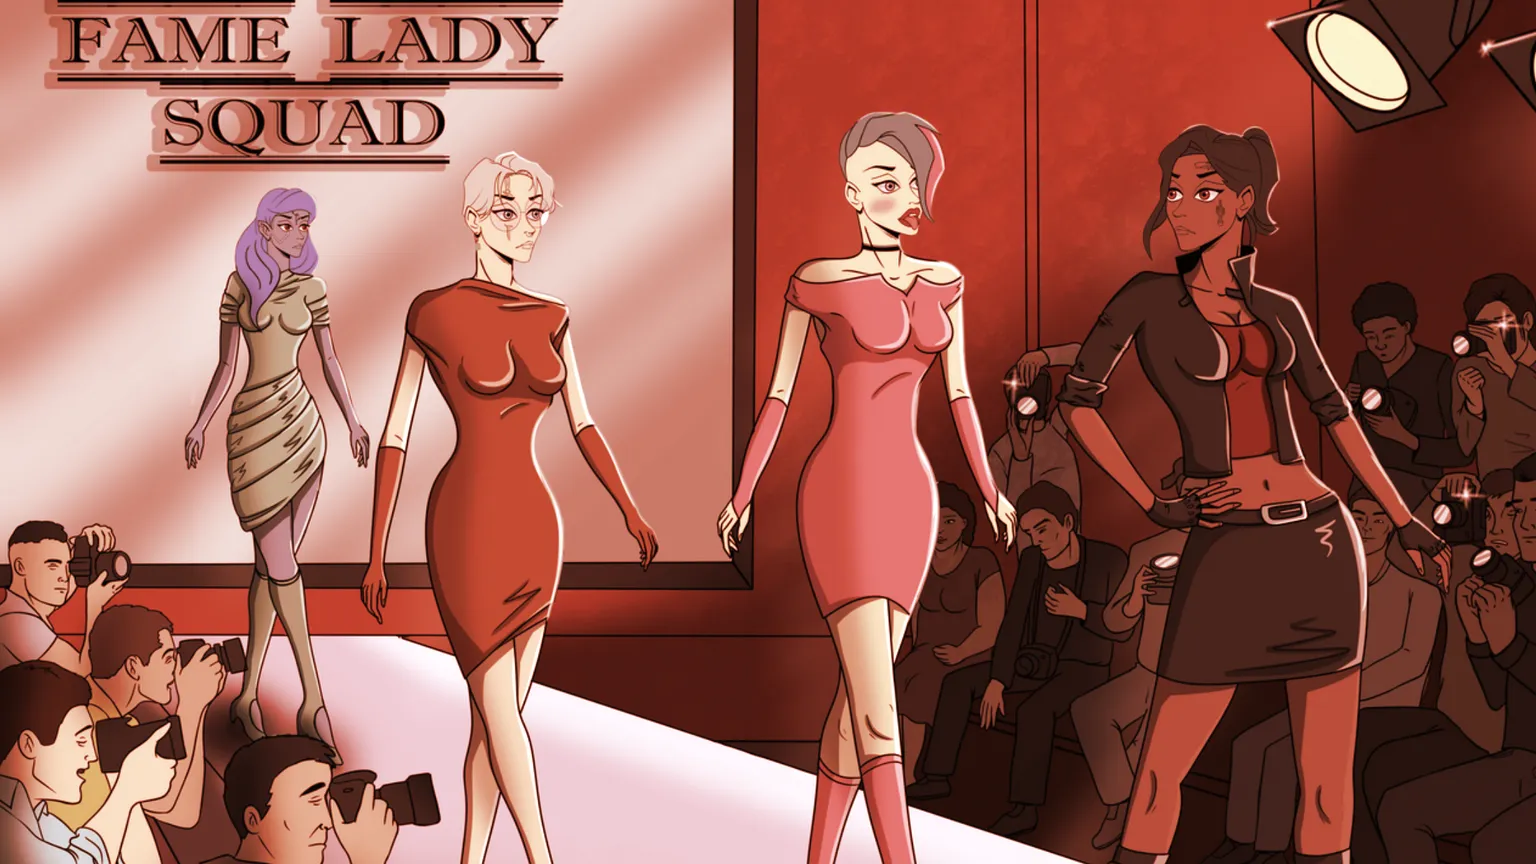 Image: Fame Lady Squad